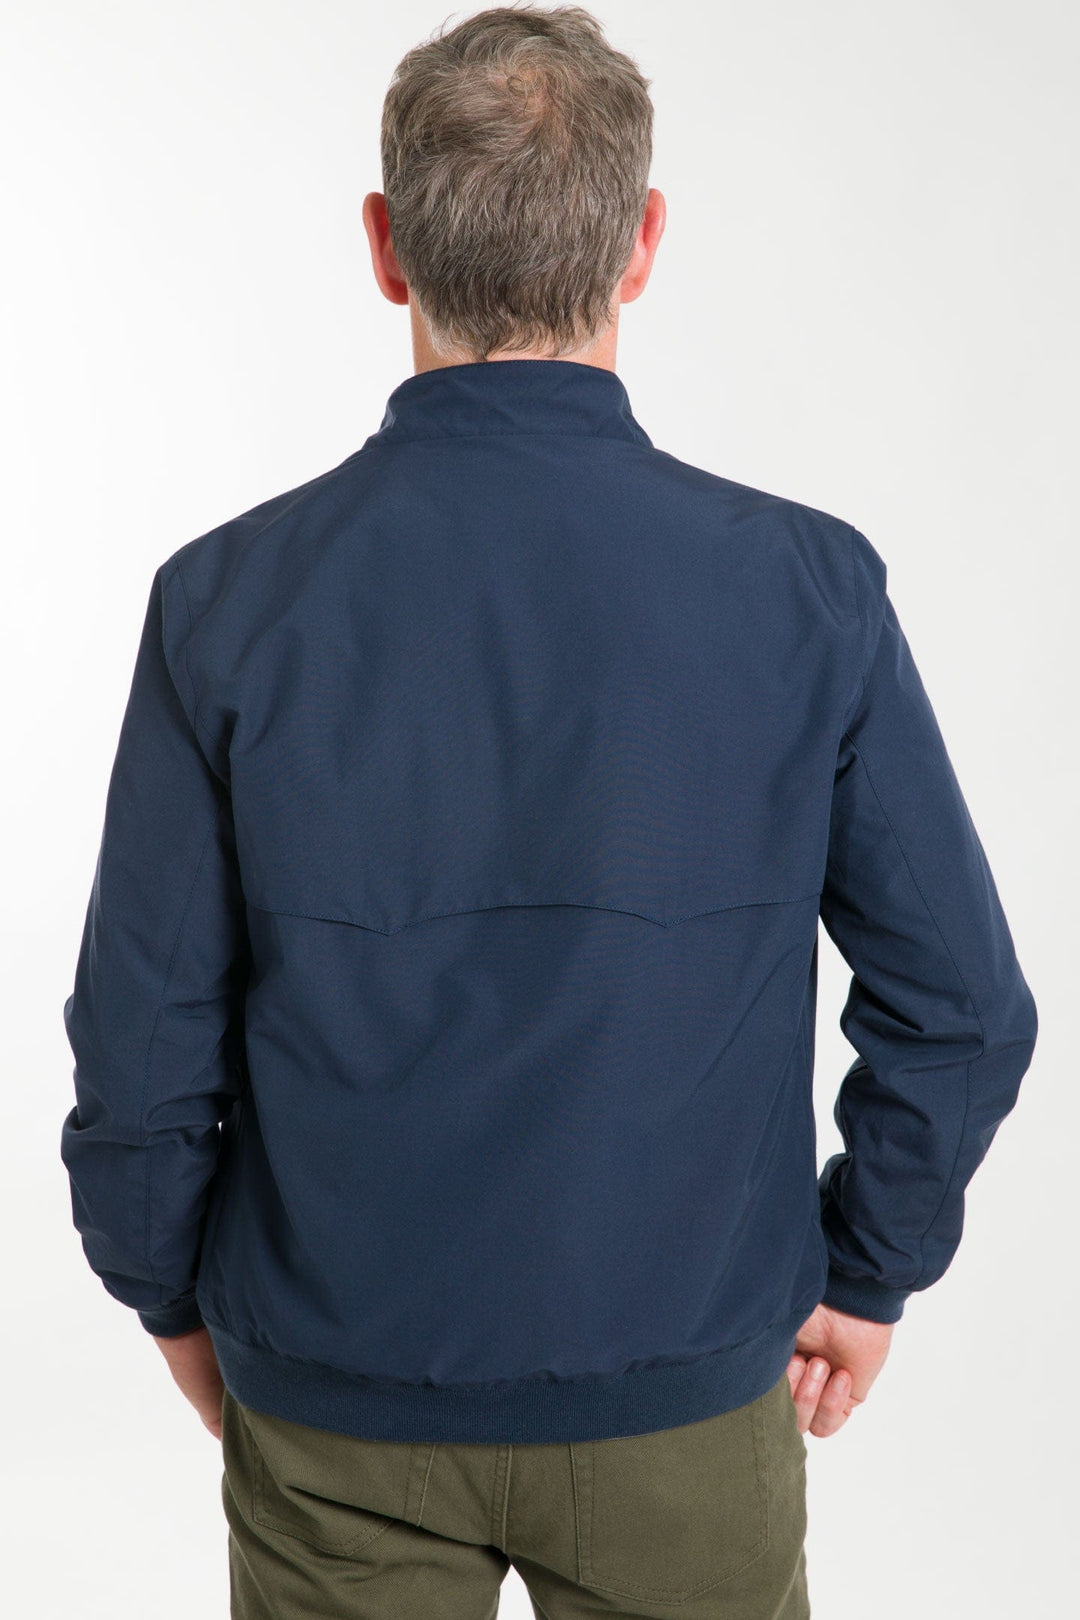 Ash & Erie Dark Navy Harrington Jacket for Short Men